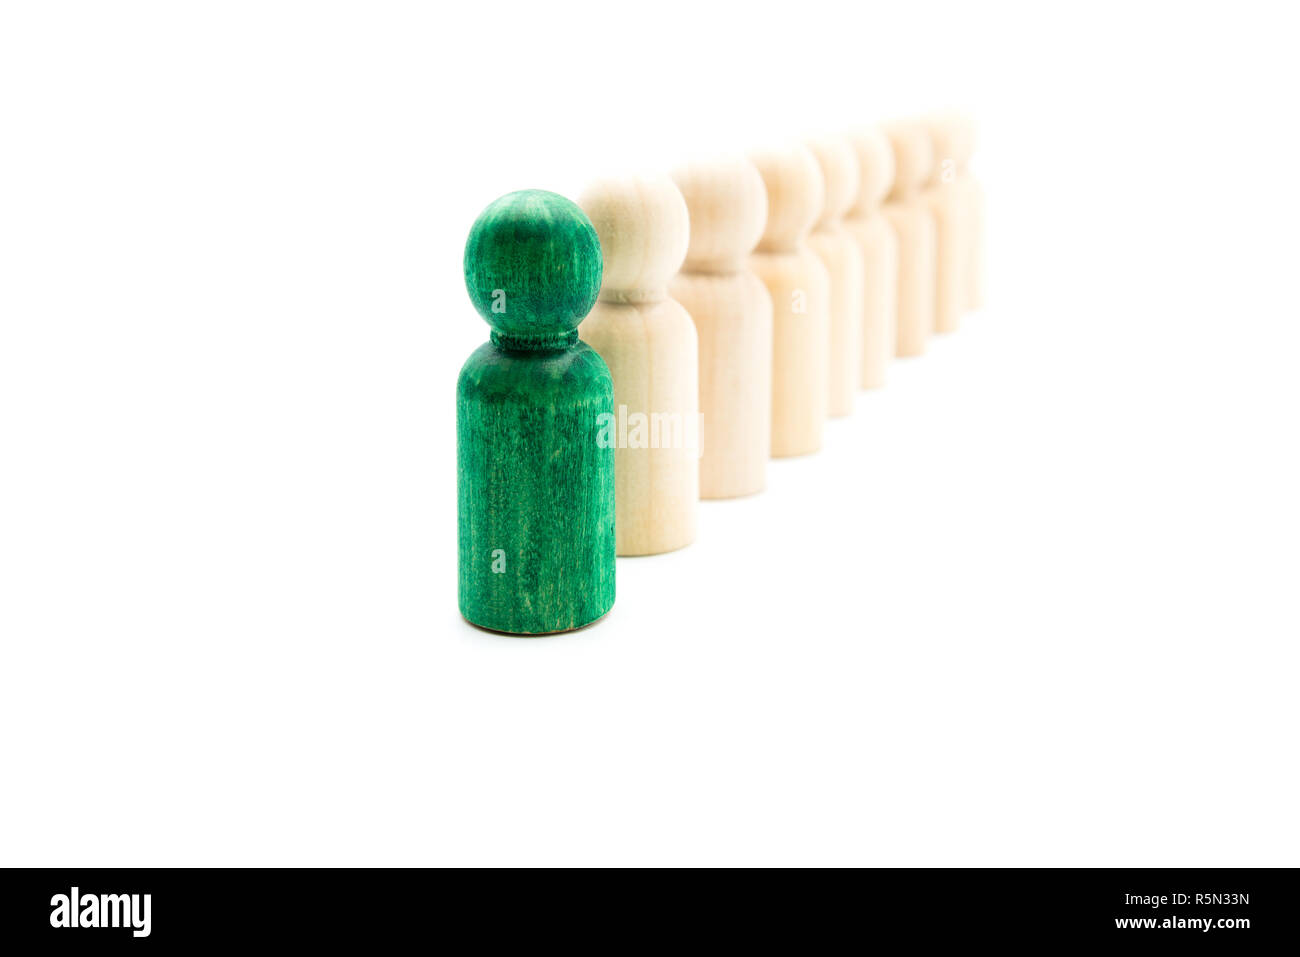 Grün Abbildung stehen heraus von der Masse vor der Linie der Holzfiguren, auf weißem Hintergrund. Führung Konzept Stockfoto